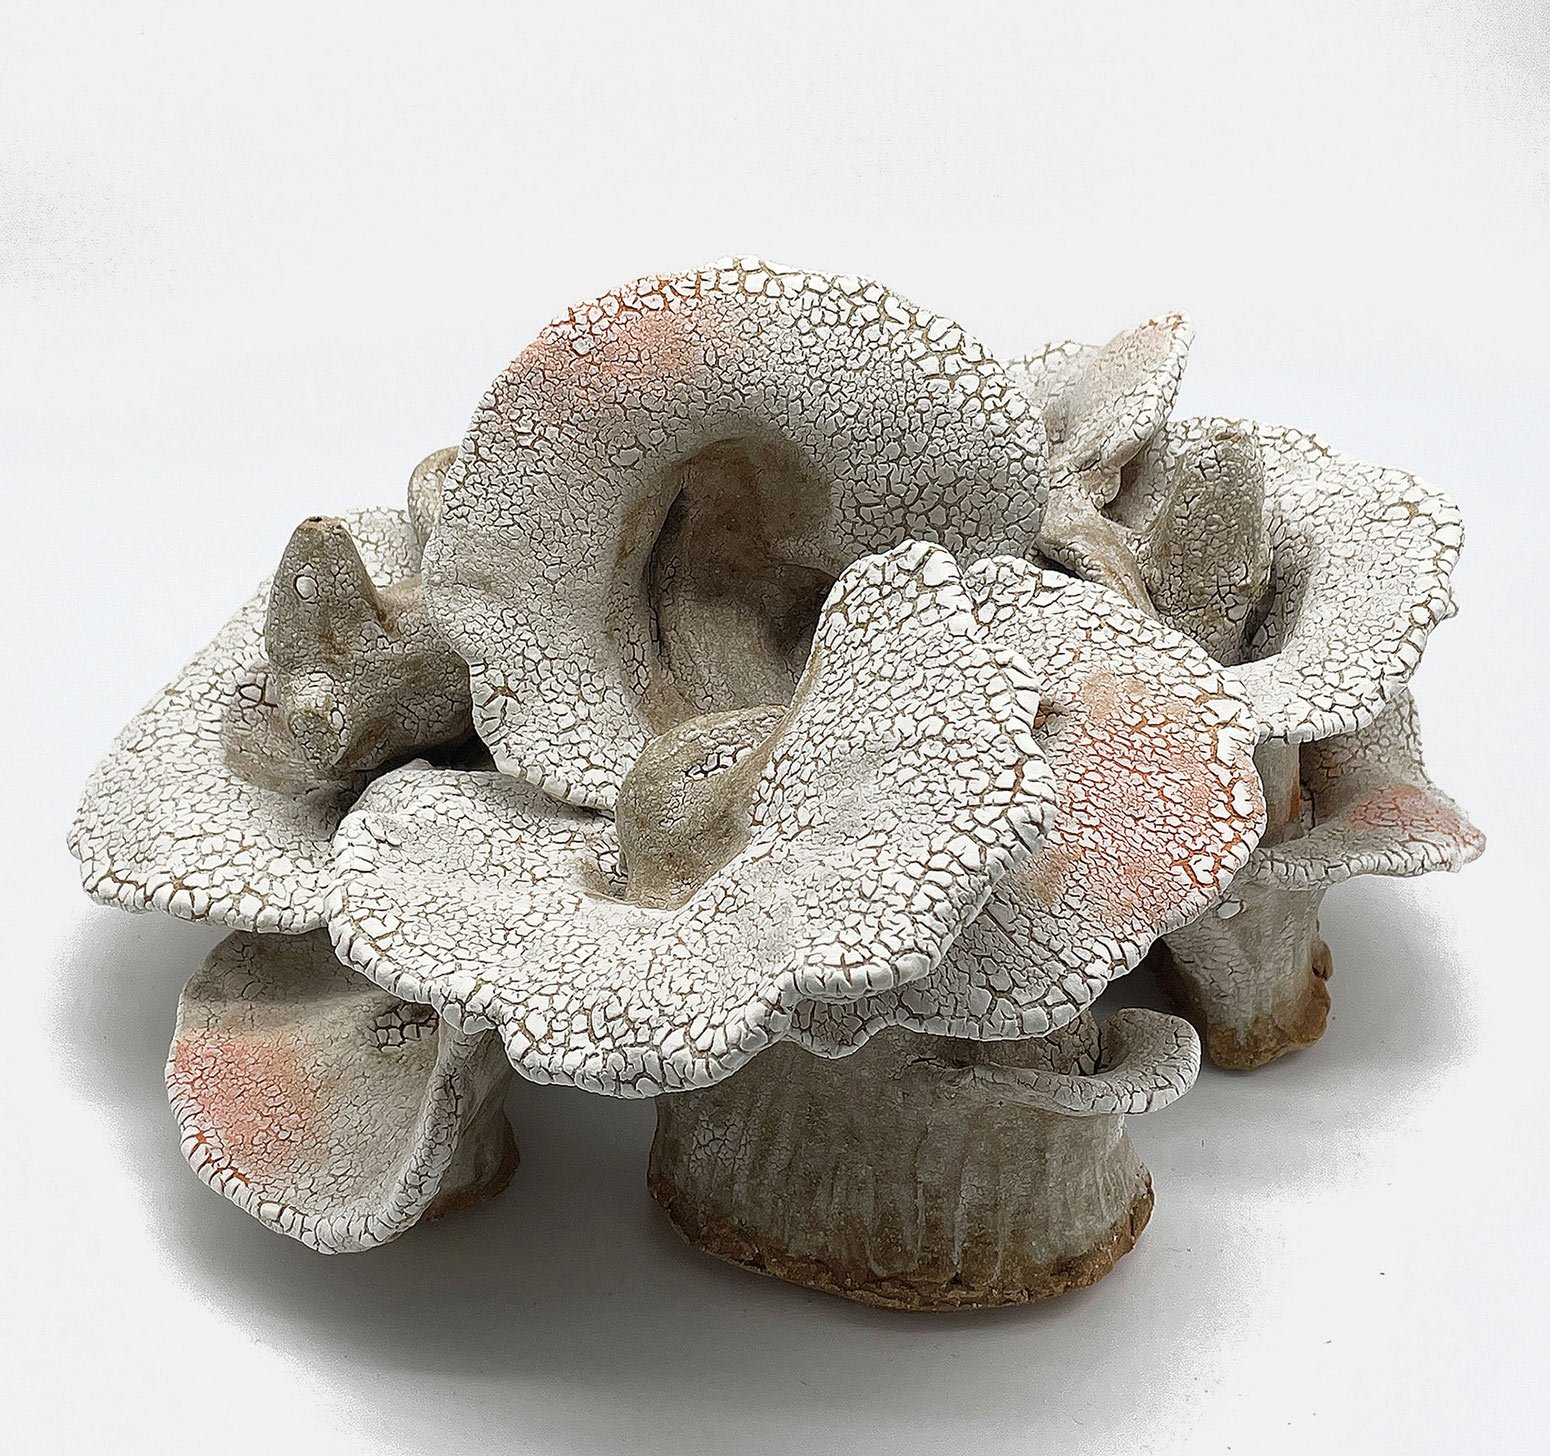   Fungal  2022  clay, glaze  7” x 12”   